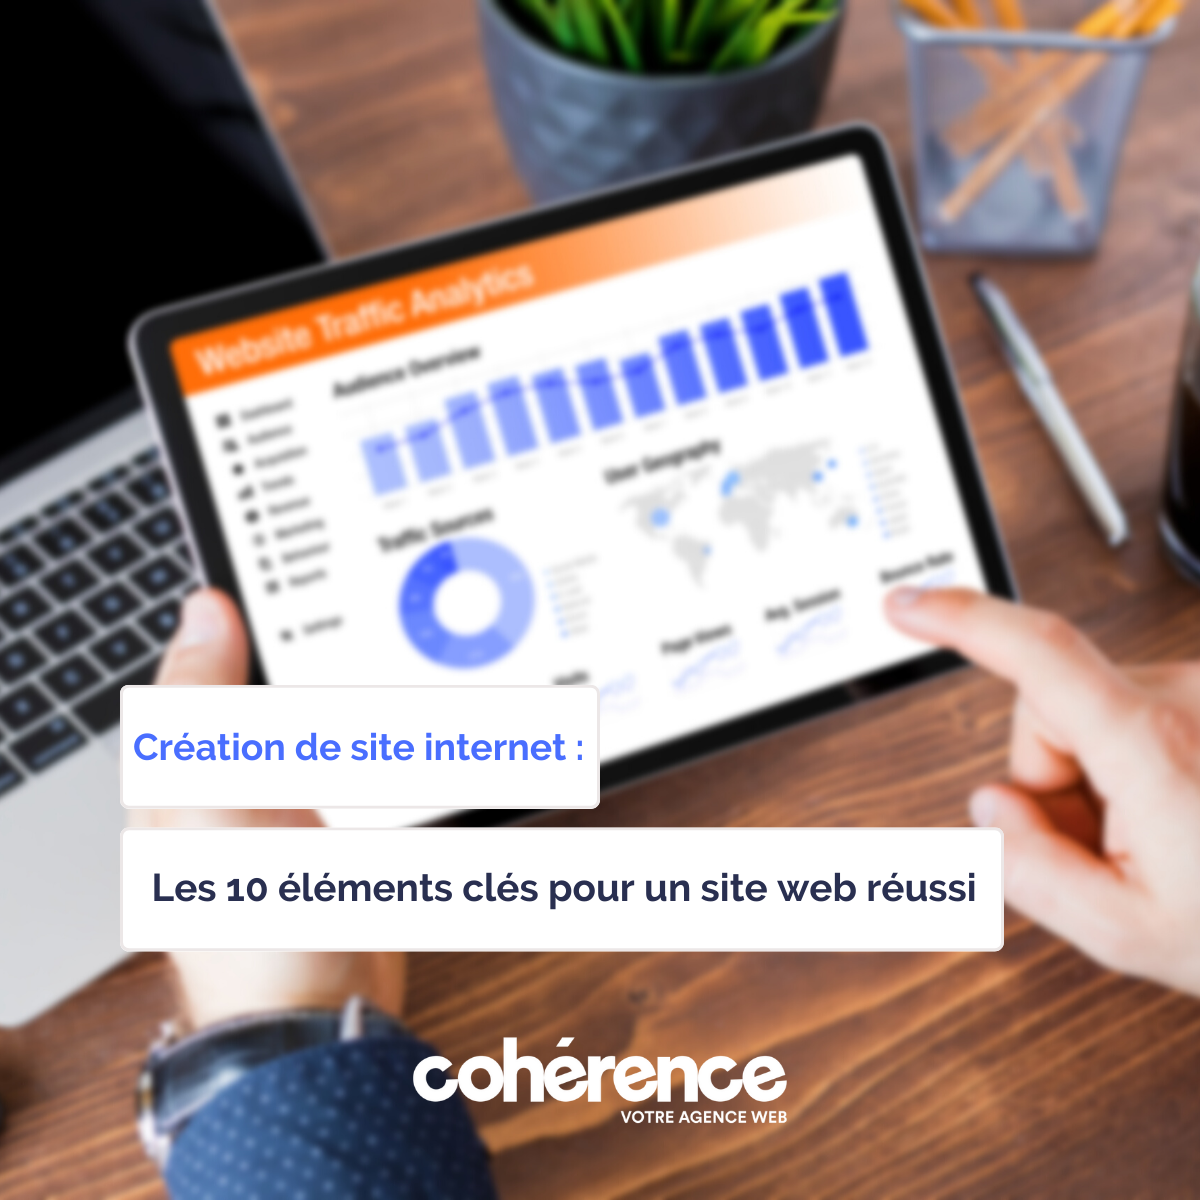 Coherence Agence Web A Rennes Les 10 Elements Cles Pour Un Site Internet Reussi